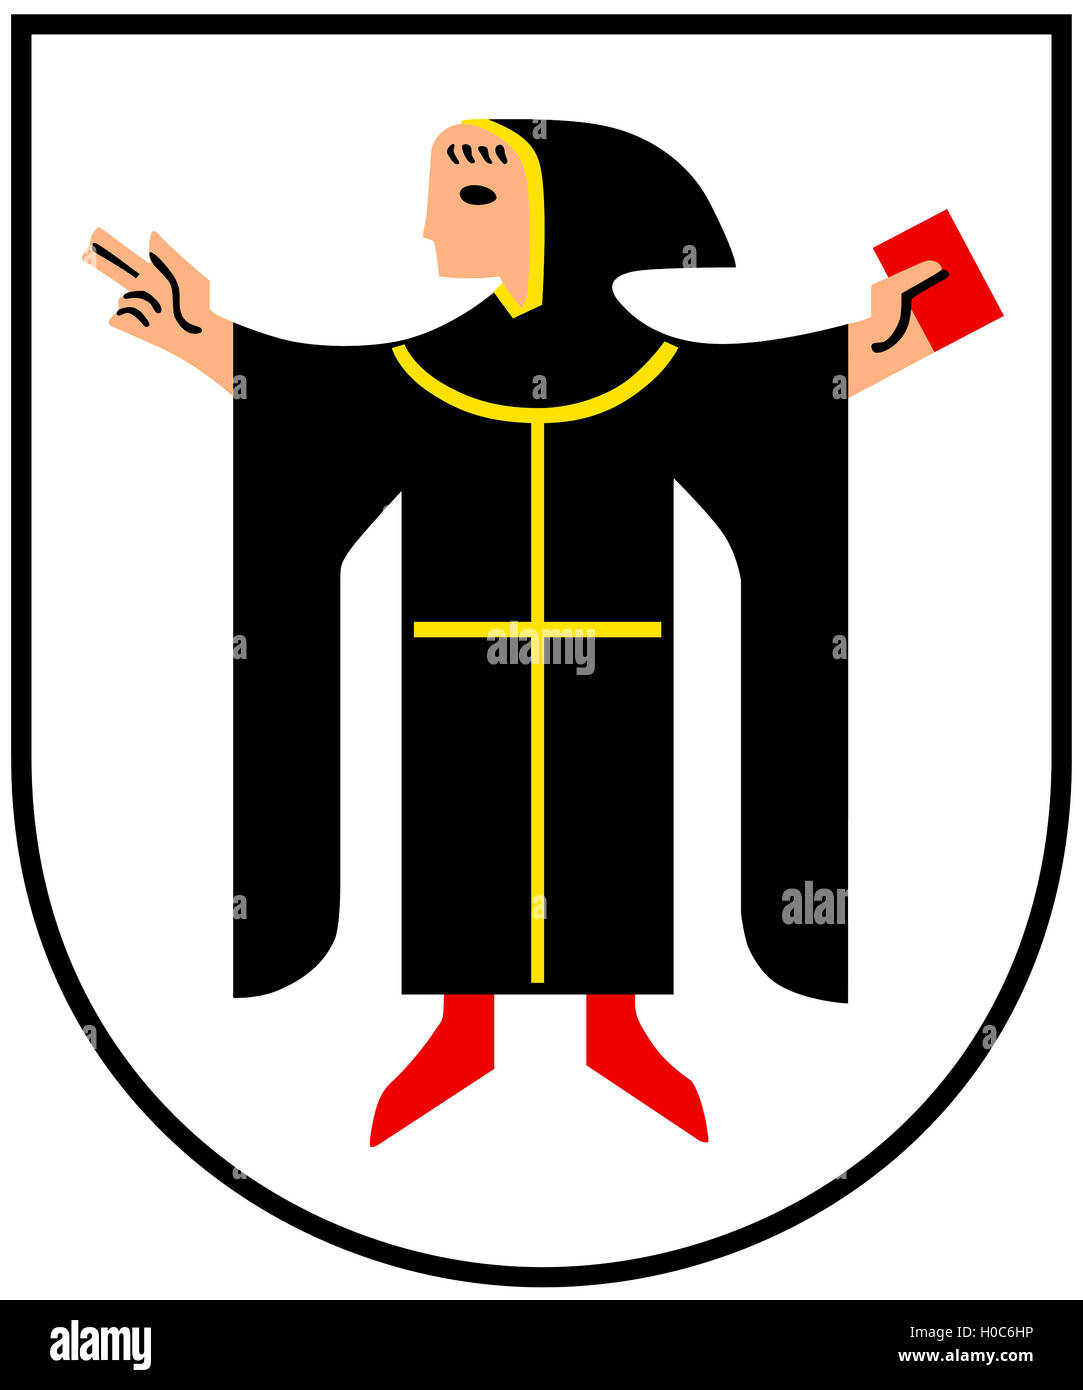 Escudo de armas de la capital bávara, Munich, en Alemania. Foto de stock